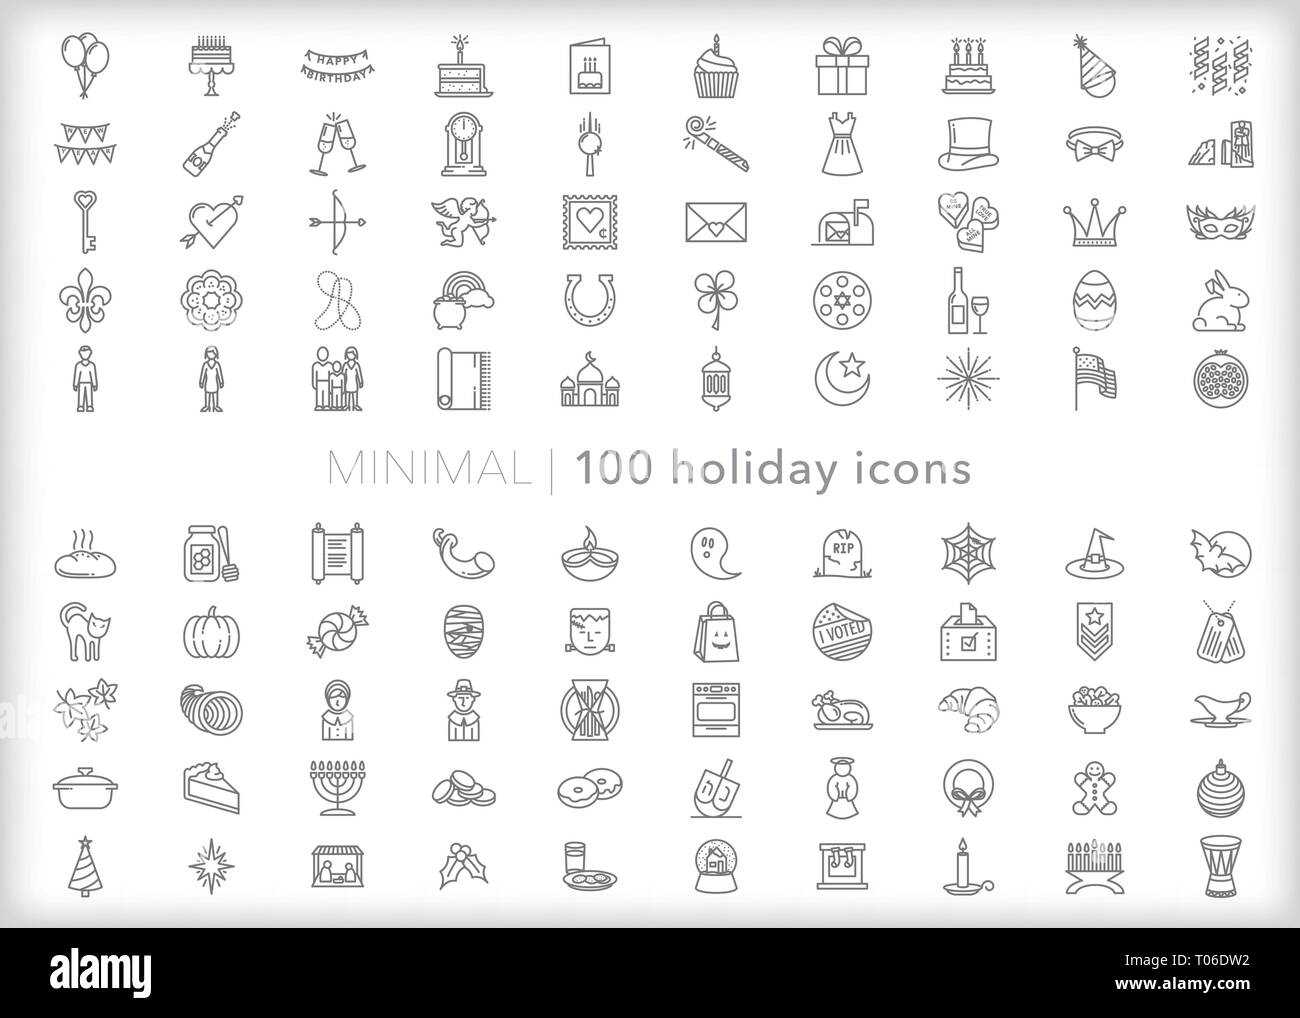 Satz von 100 Holiday icons Spanning das Kalenderjahr einschließlich Neujahr, Valentinstag, Halloween, Thanksgiving, Weihnachten, Kwanzaa Stock Vektor